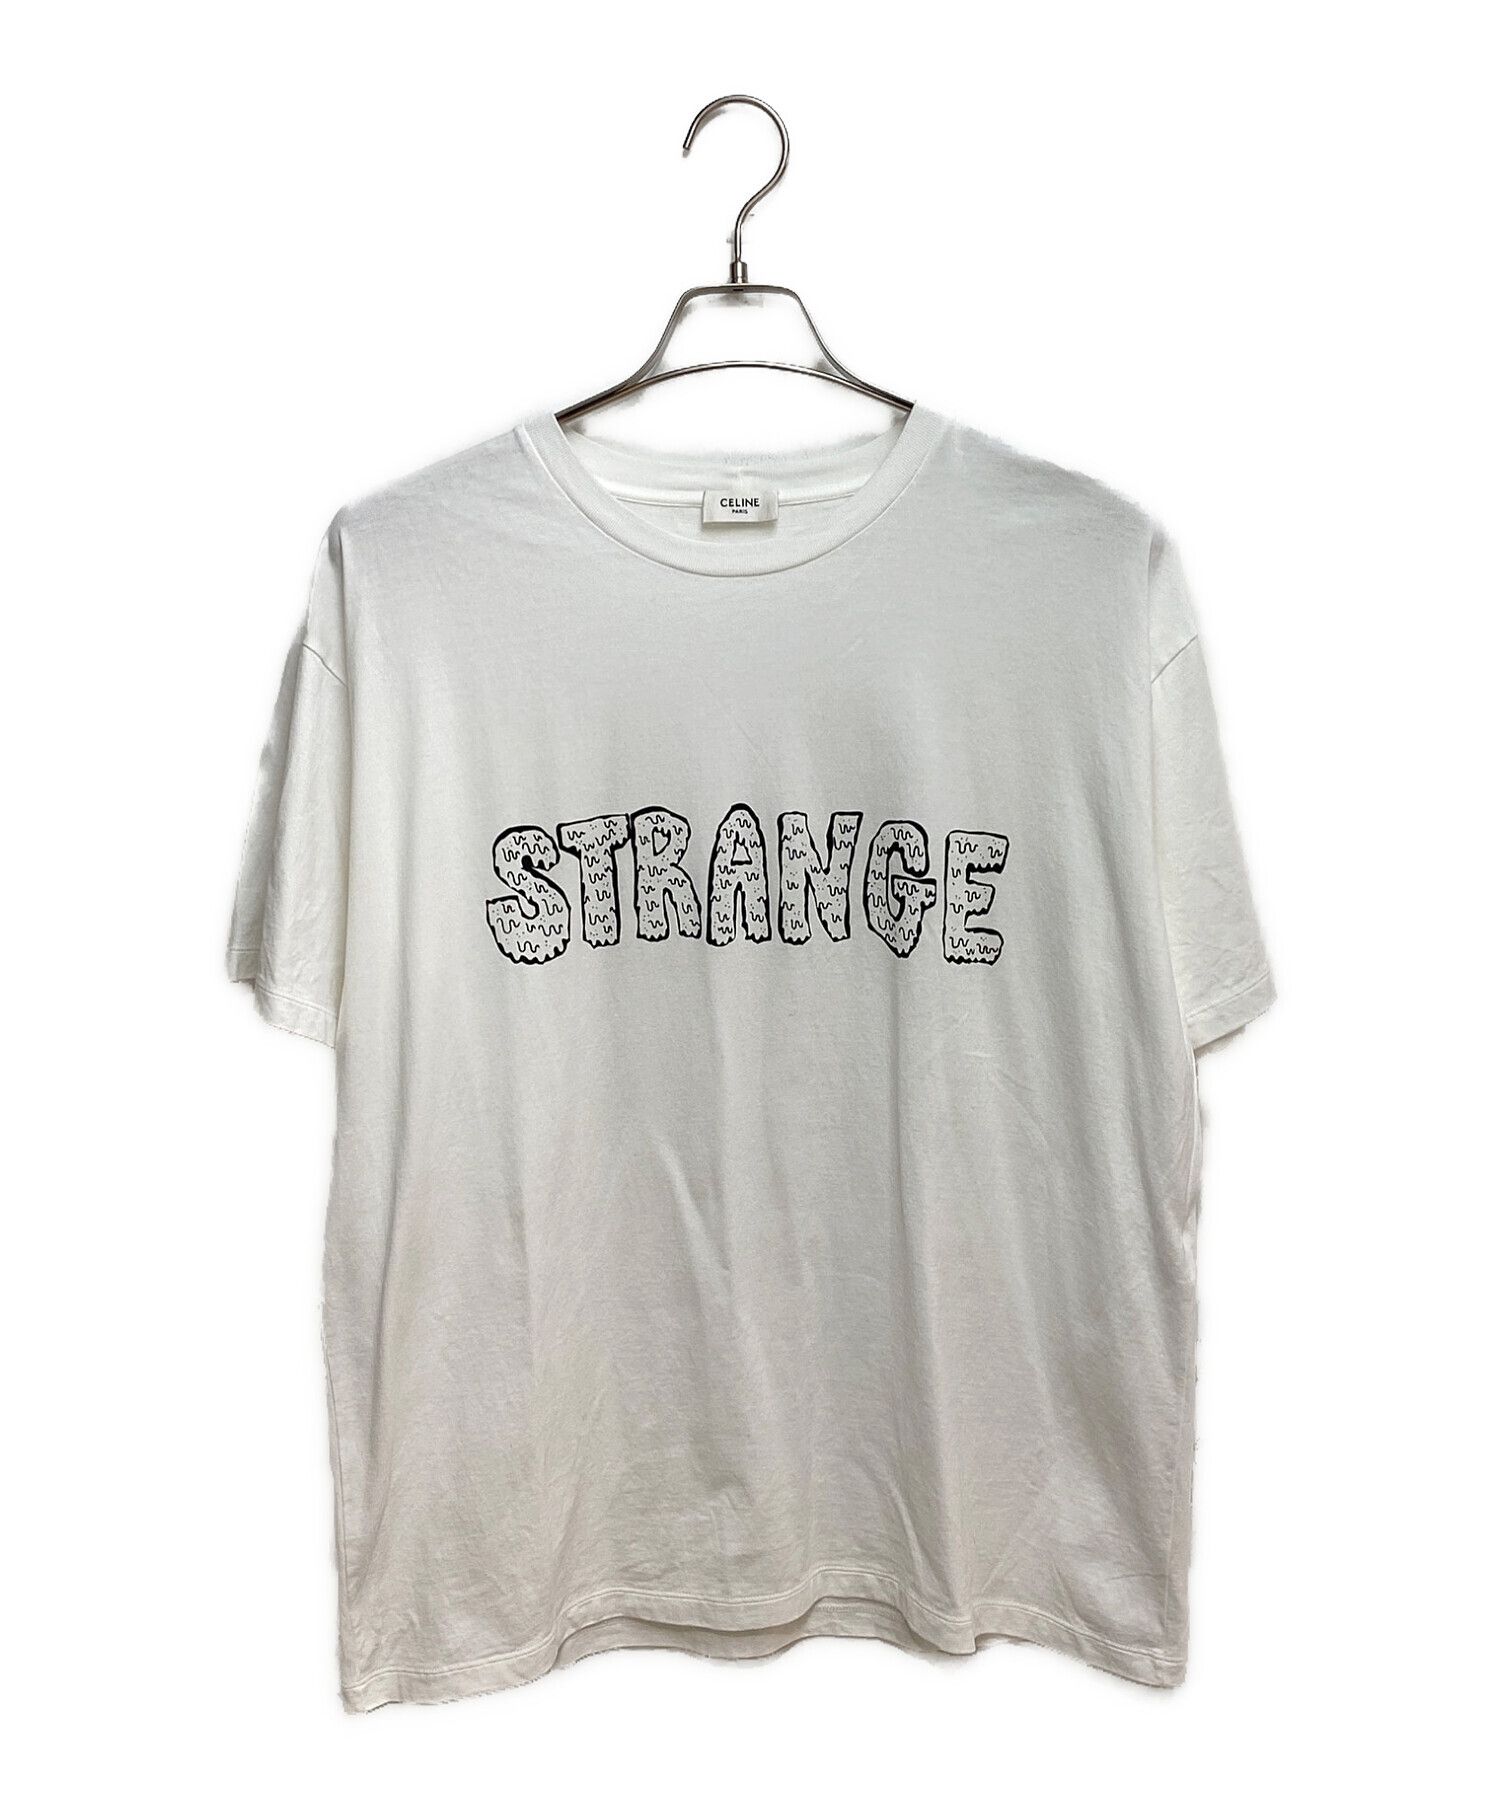 全品最安値に挑戦 CELINE 21AW STRANGE Tシャツ マーメイド ヘックス 